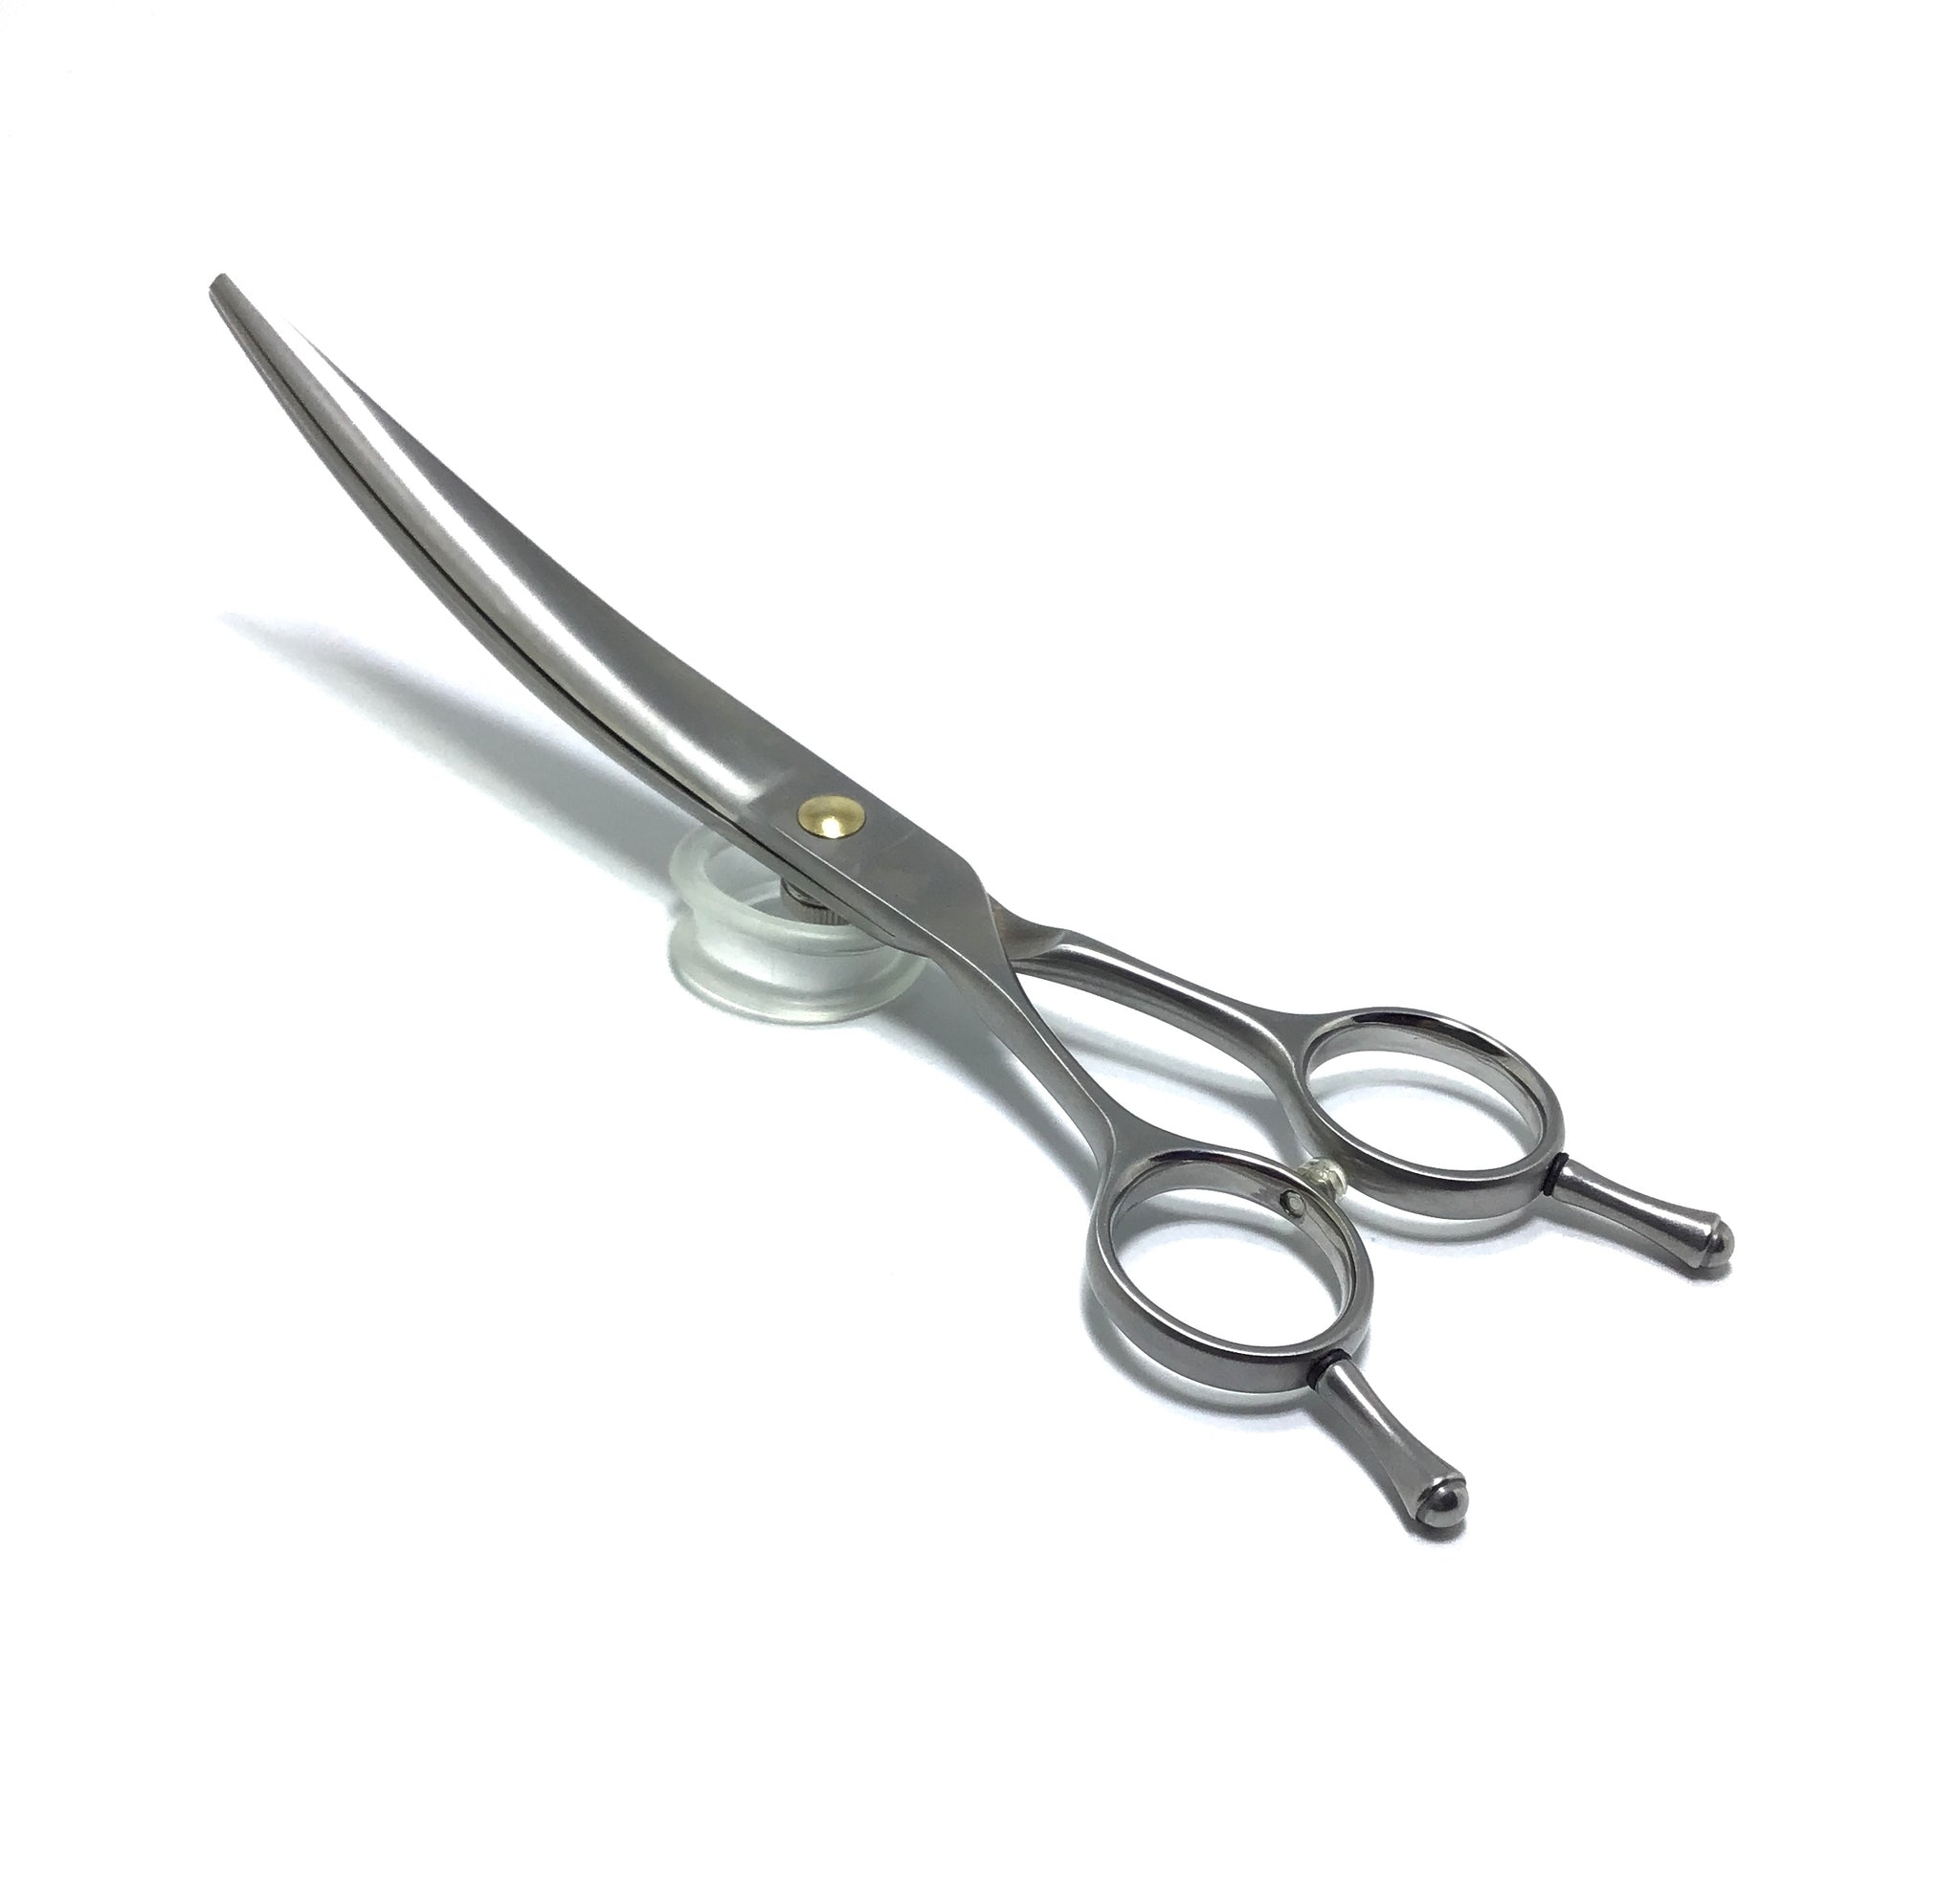 Left-Handed Japanese Hair Scissors (Lefty scissors) – Ninja Scissors